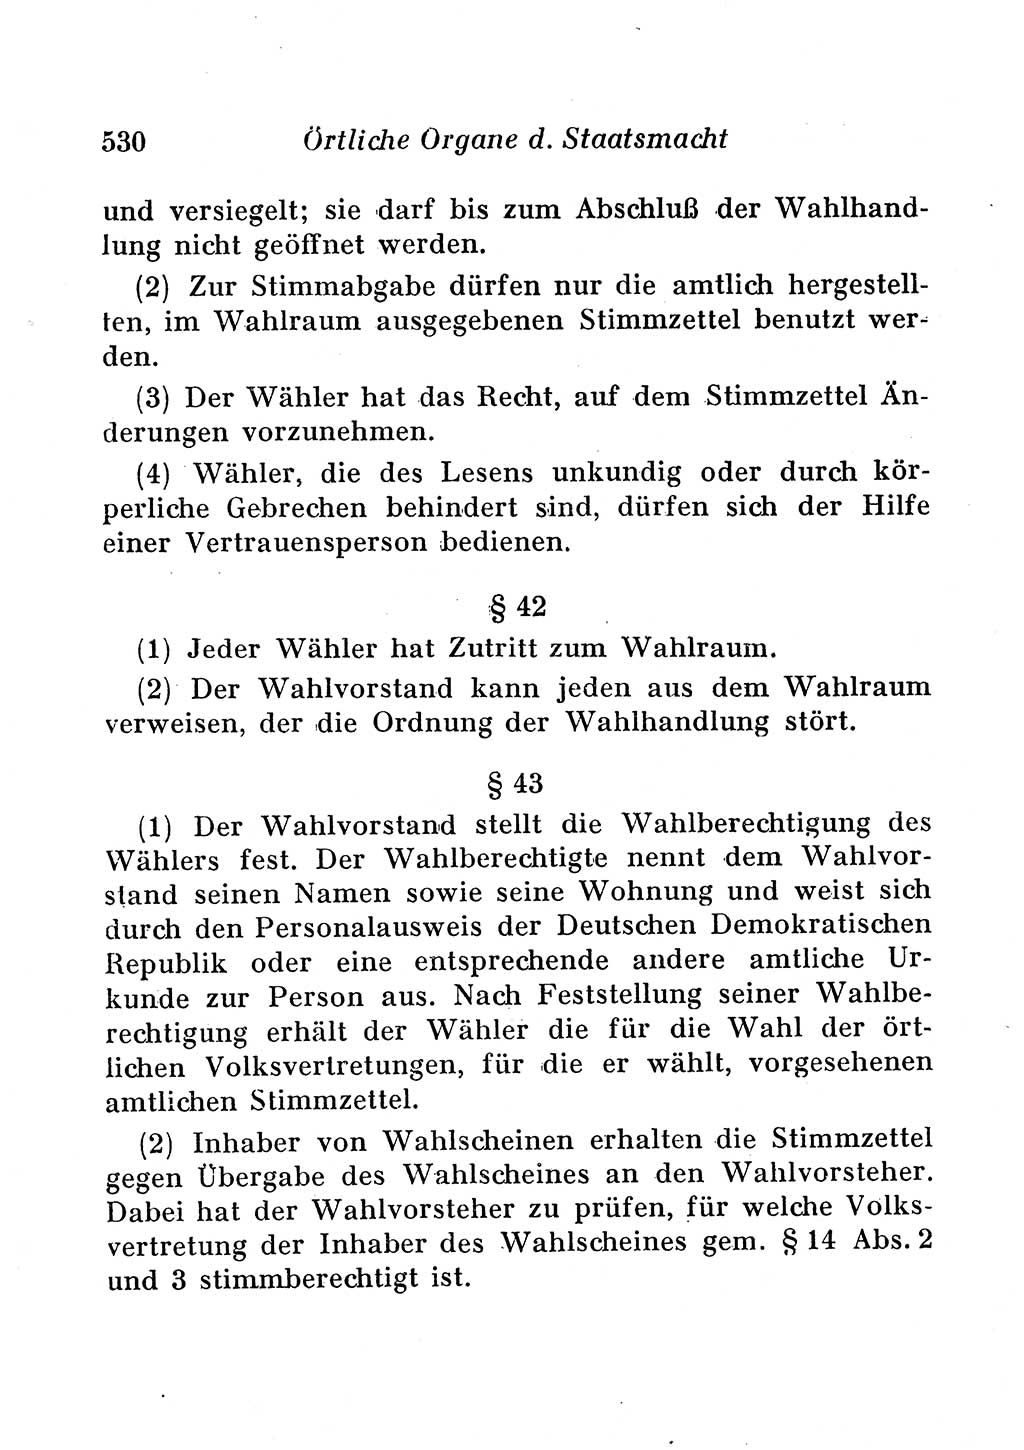 Staats- und verwaltungsrechtliche Gesetze der Deutschen Demokratischen Republik (DDR) 1958, Seite 530 (StVerwR Ges. DDR 1958, S. 530)